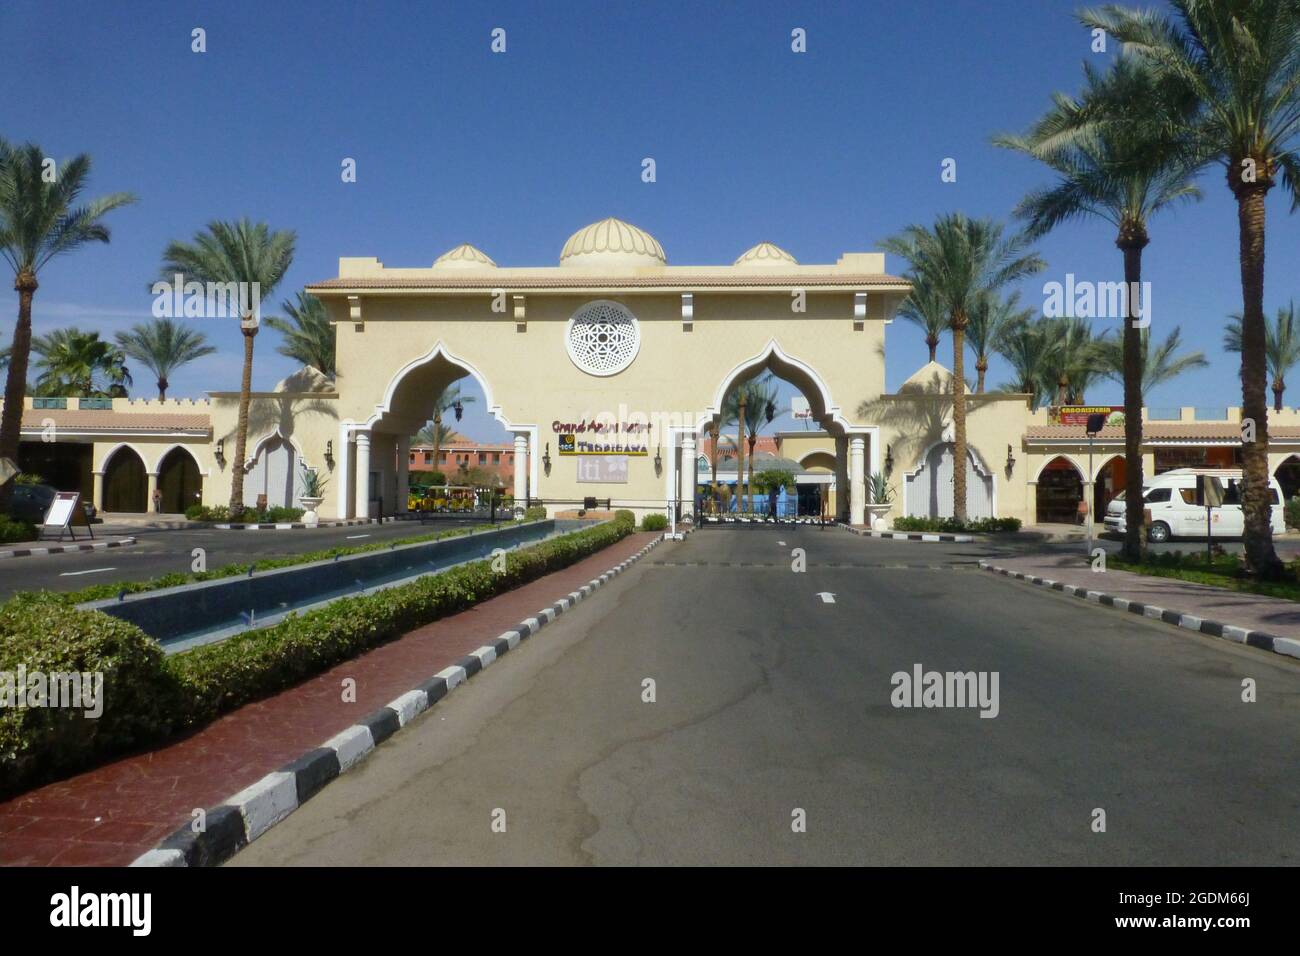 Sharm El Sheikh Egypt Hotel Road Pfad vor Palmen Baummarkierungen Bogenbögen Autos sonniger Tag heißes Wetter Eingangsgebäude Urlaub Stockfoto